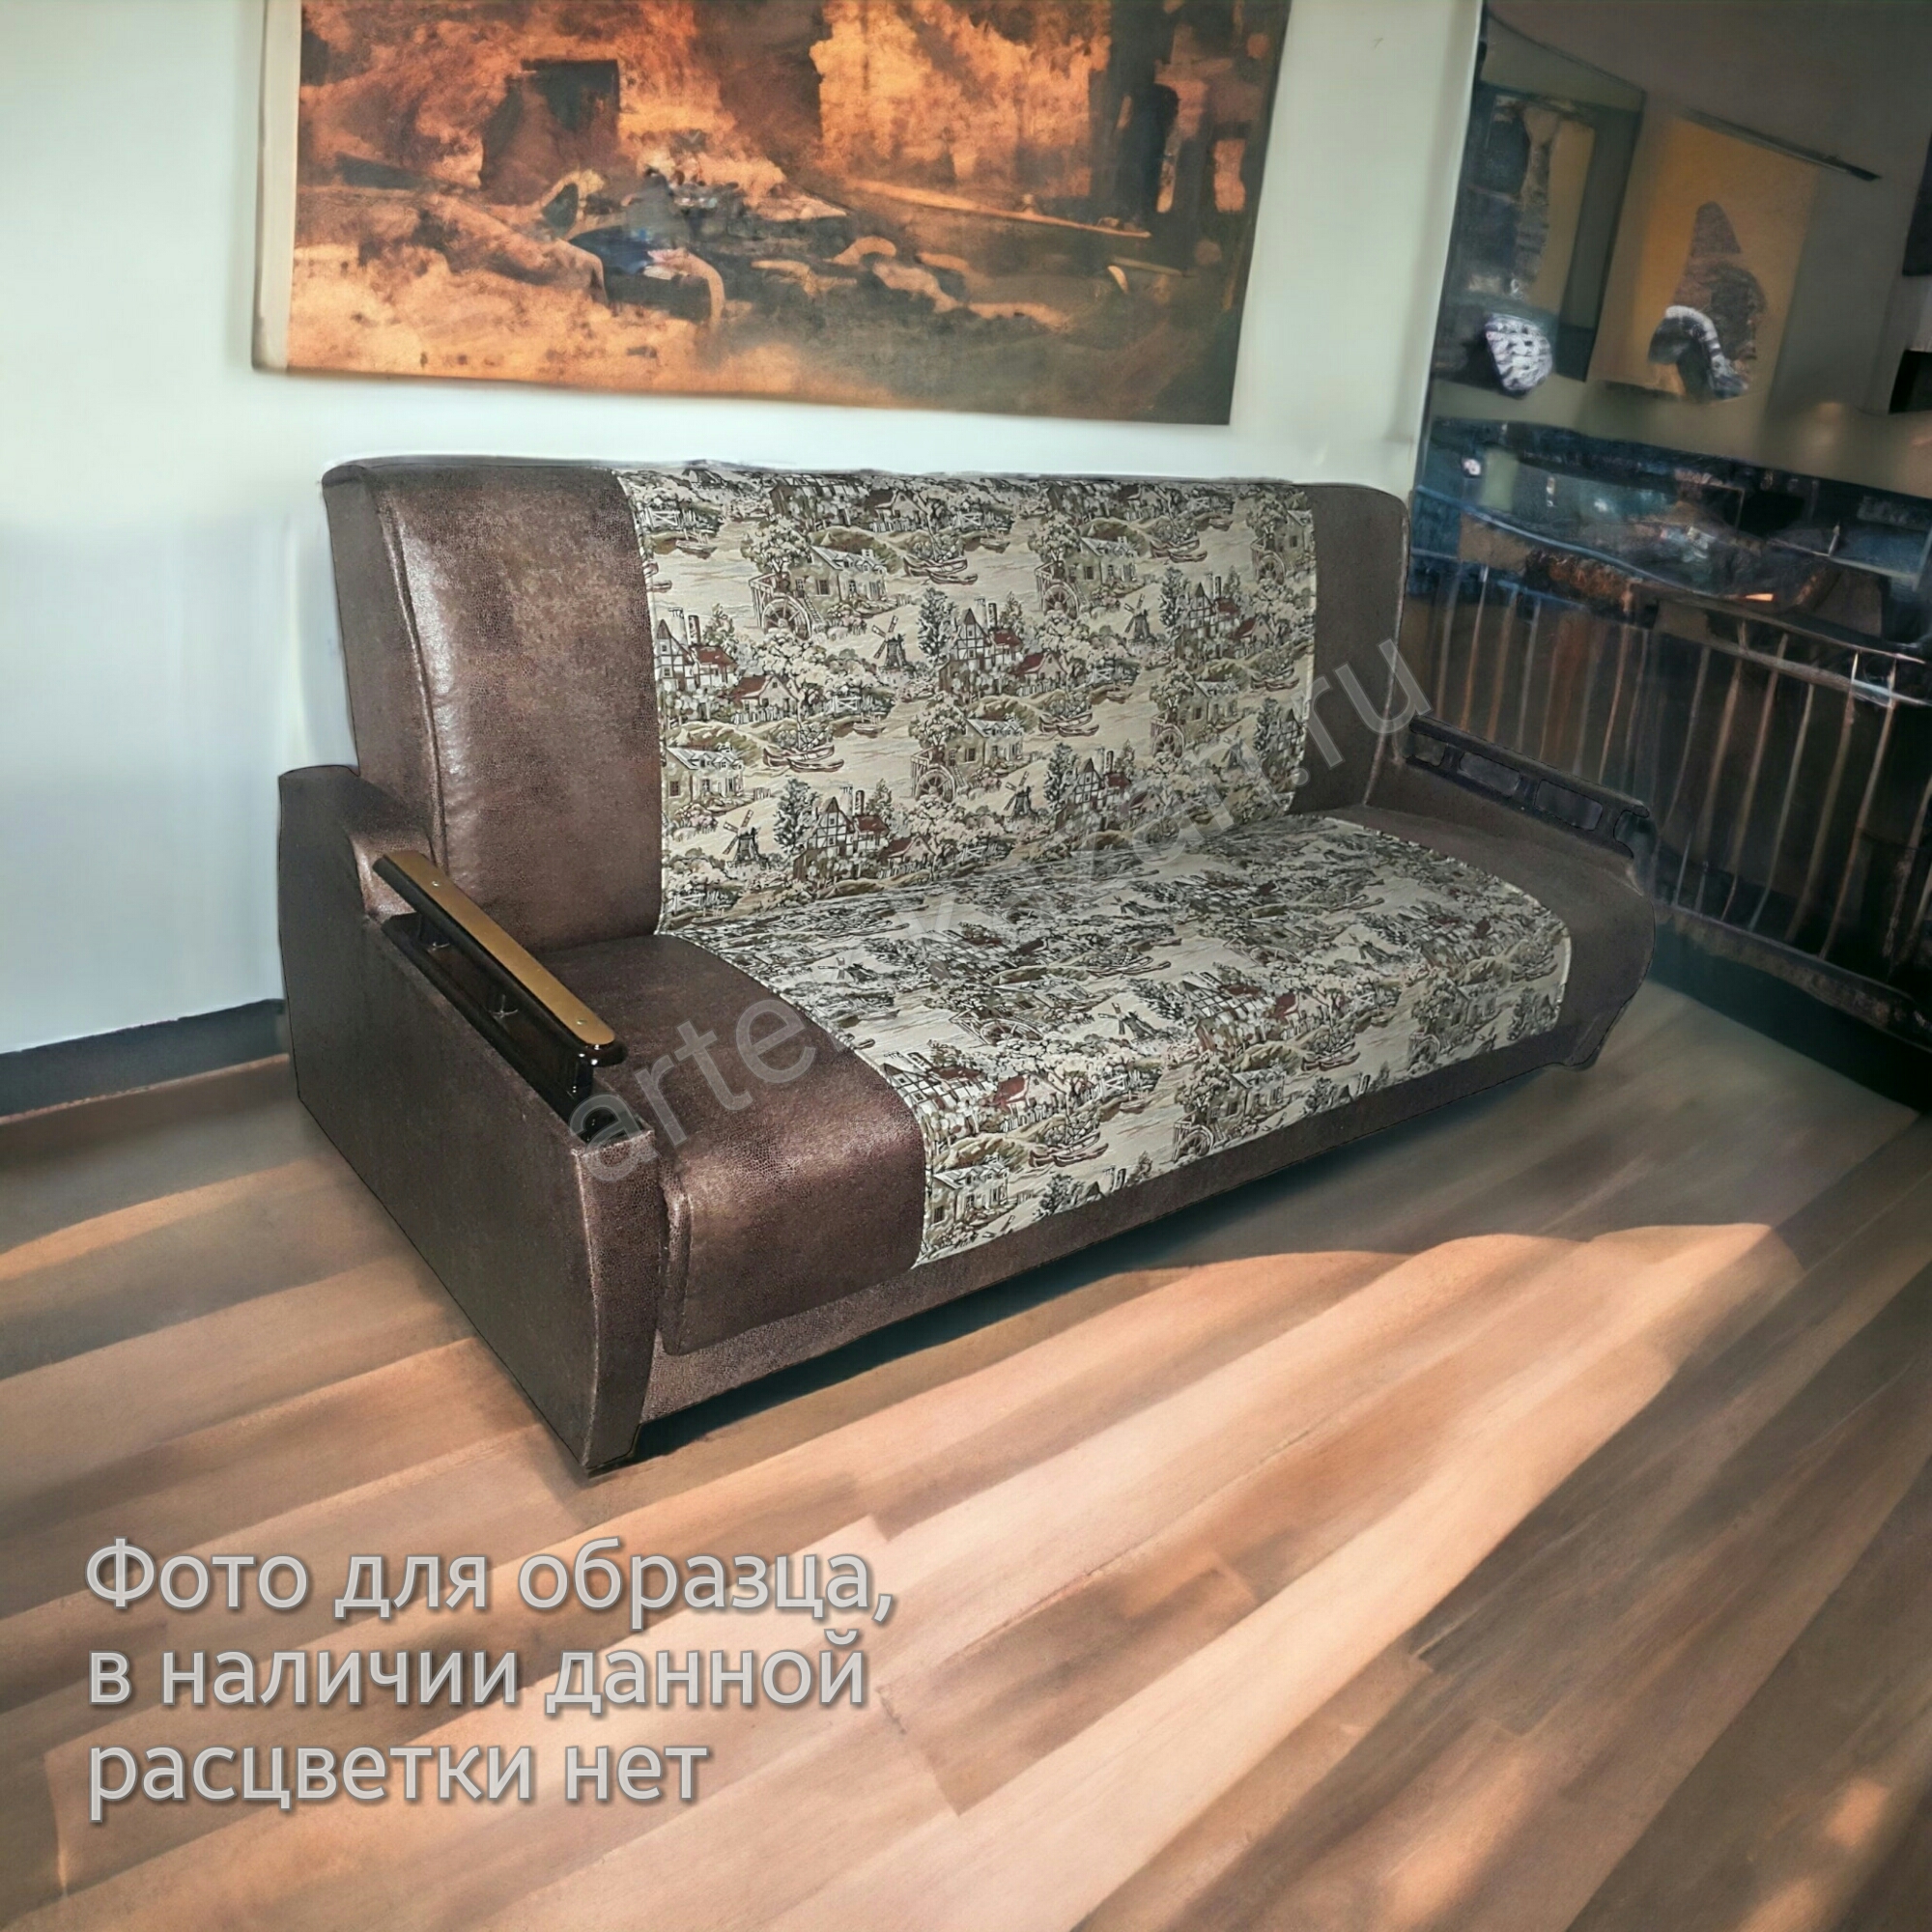 Фото 1. Купить недорогой диван по низкой цене от производителя можно у нас.